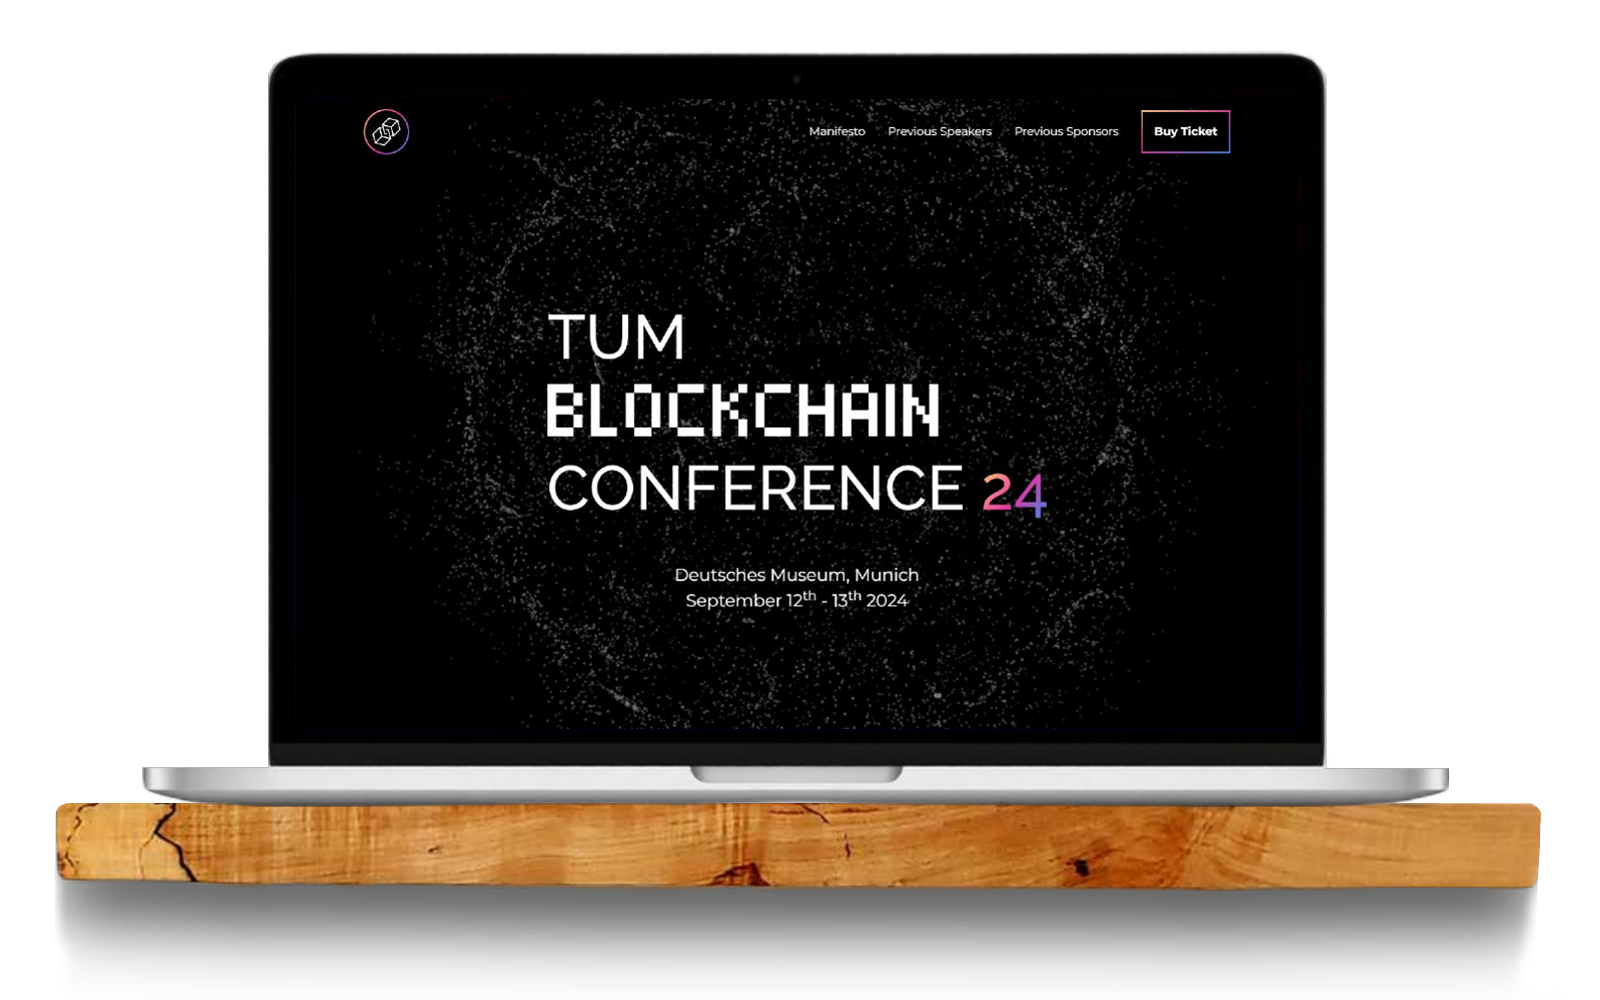 Tum blockchain conference